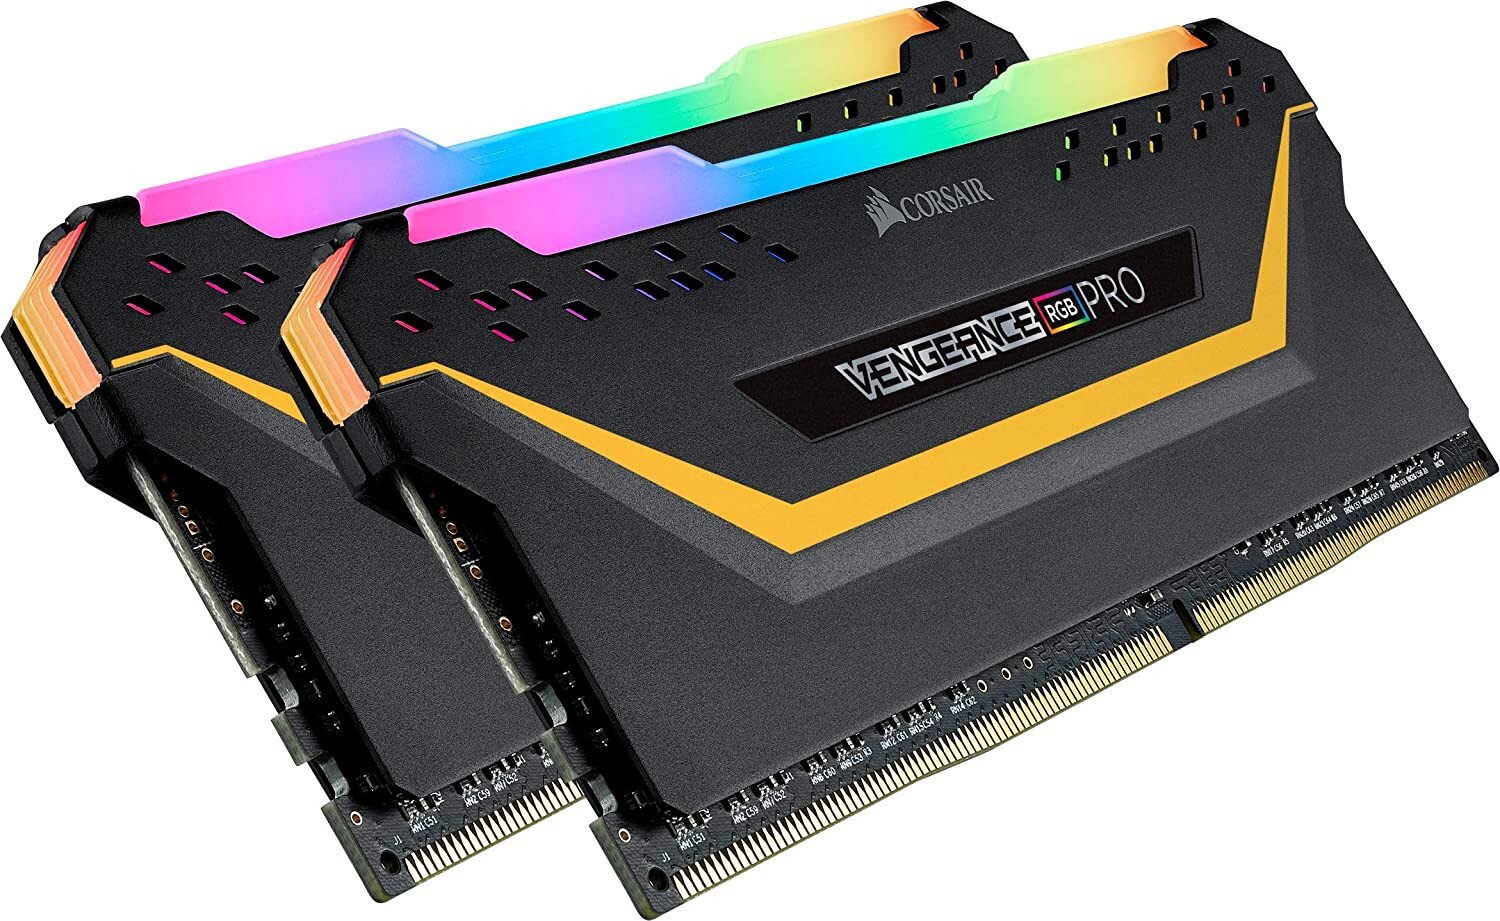 Buy Corsair VENGEANCE RGB PRO 16GB (2 x 8GB) DDR4 DRAM 3200MHz C16 Memory Kit - TUF Gaming